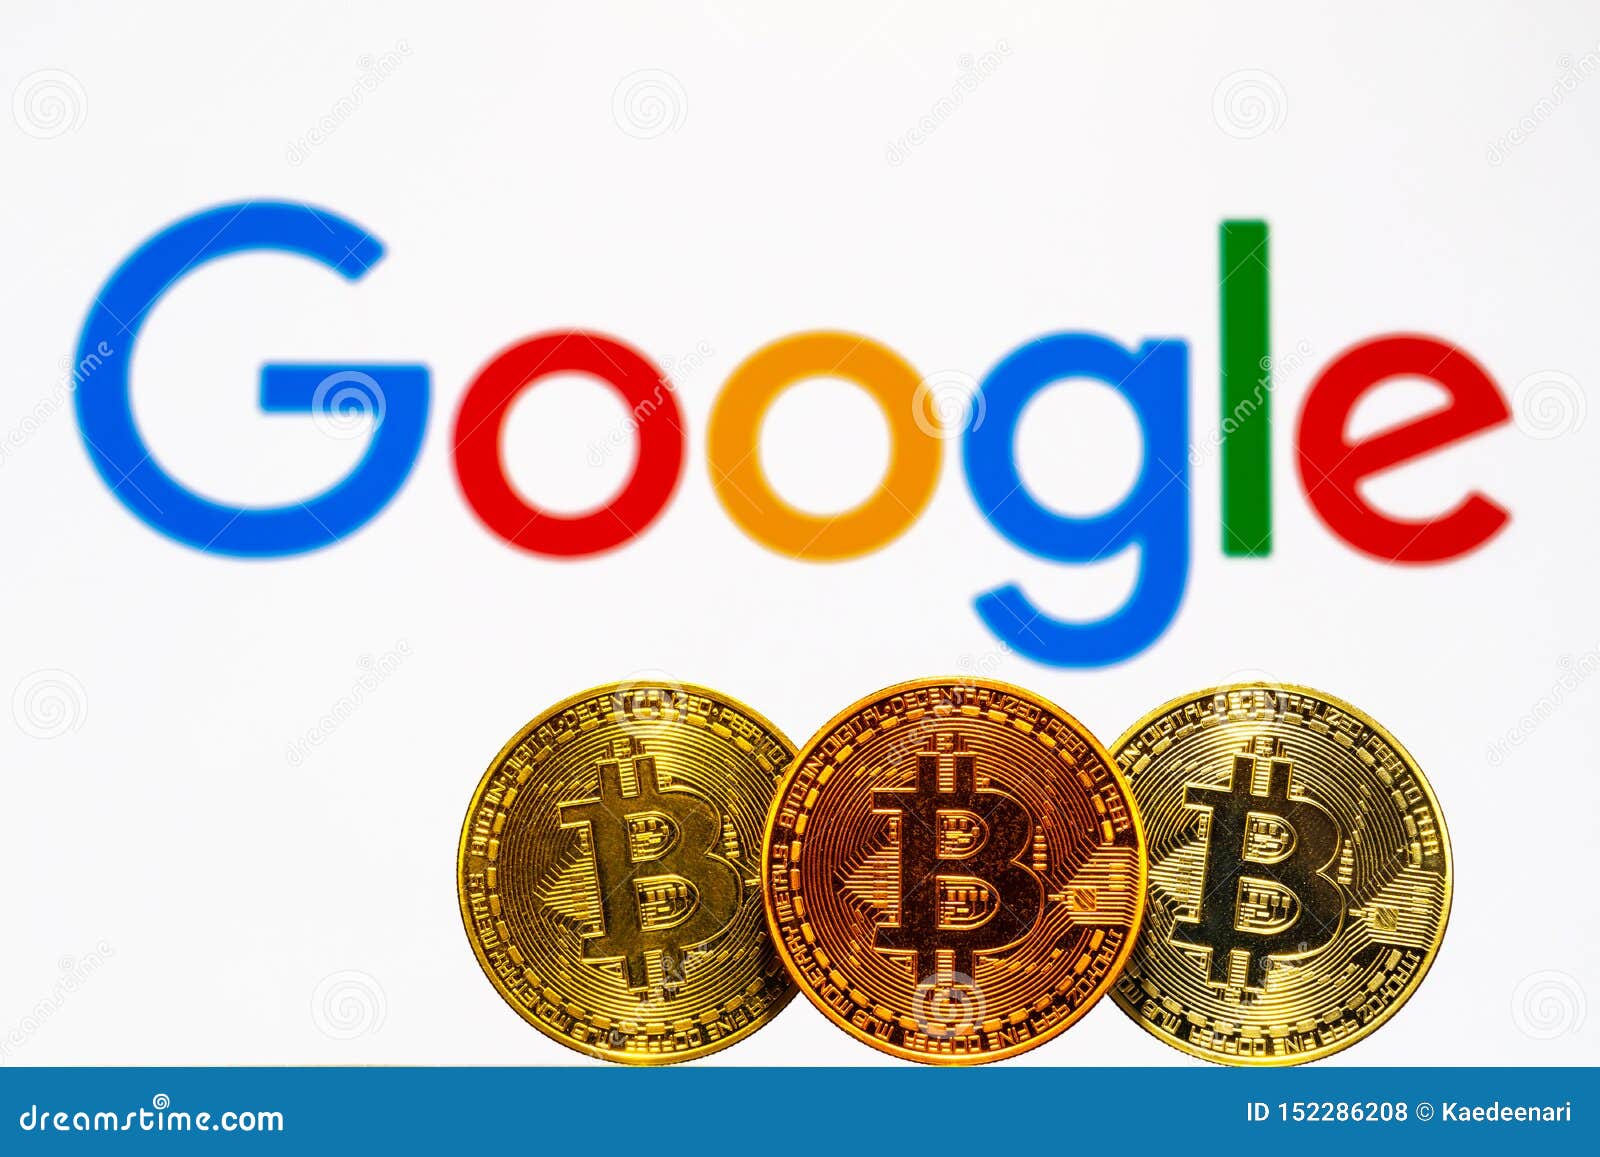 google coin crypto